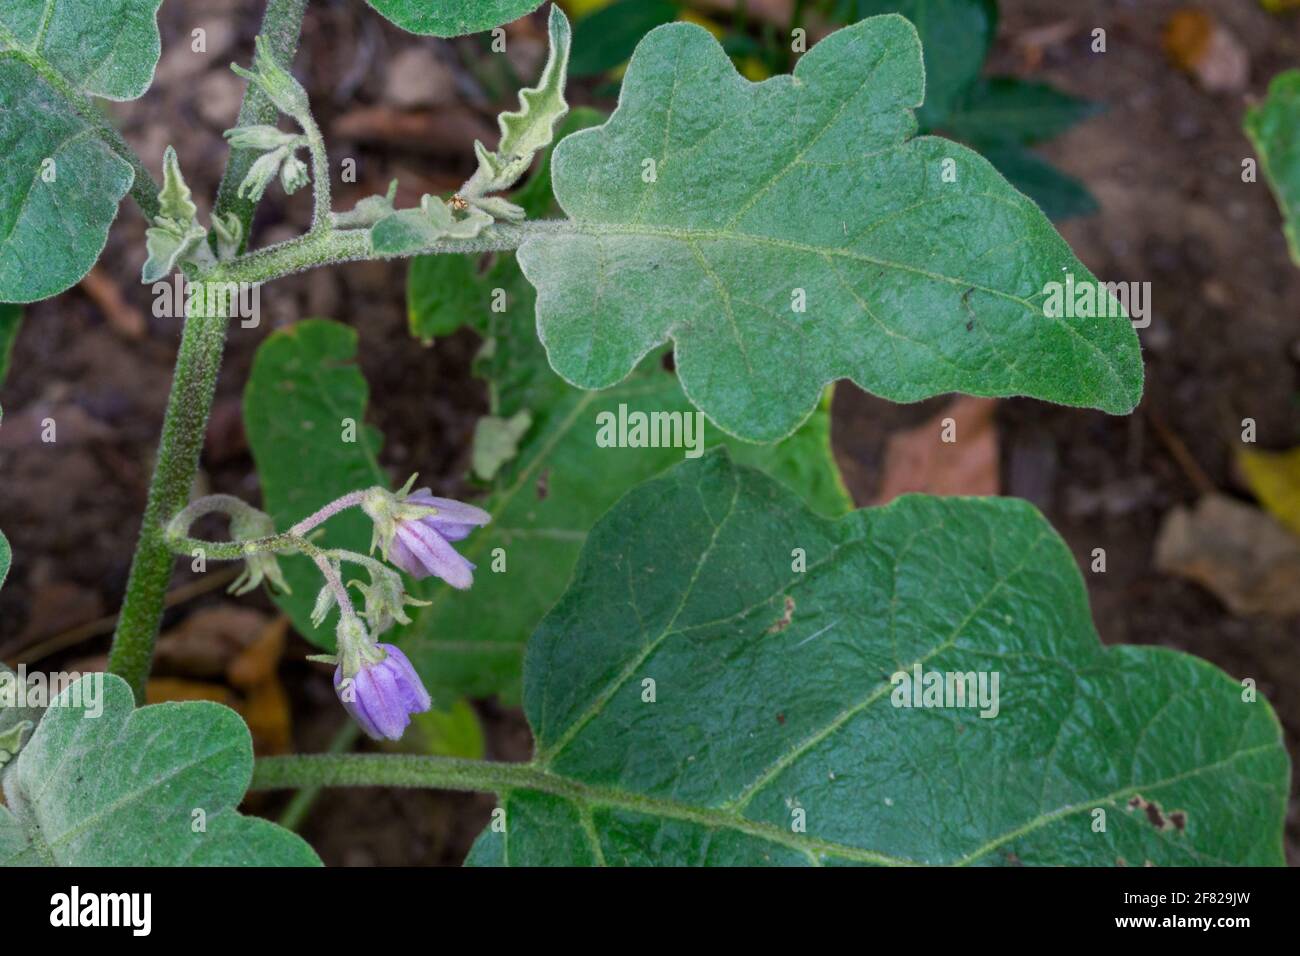 Eine Nahaufnahme von selbst angebautem Brinjal, das allgemein als Aubergine bekannt ist. Aubergine ist eine Pflanzenart in der Familie der Nachtschattengewächse Solanaceae. Solanum m Stockfoto